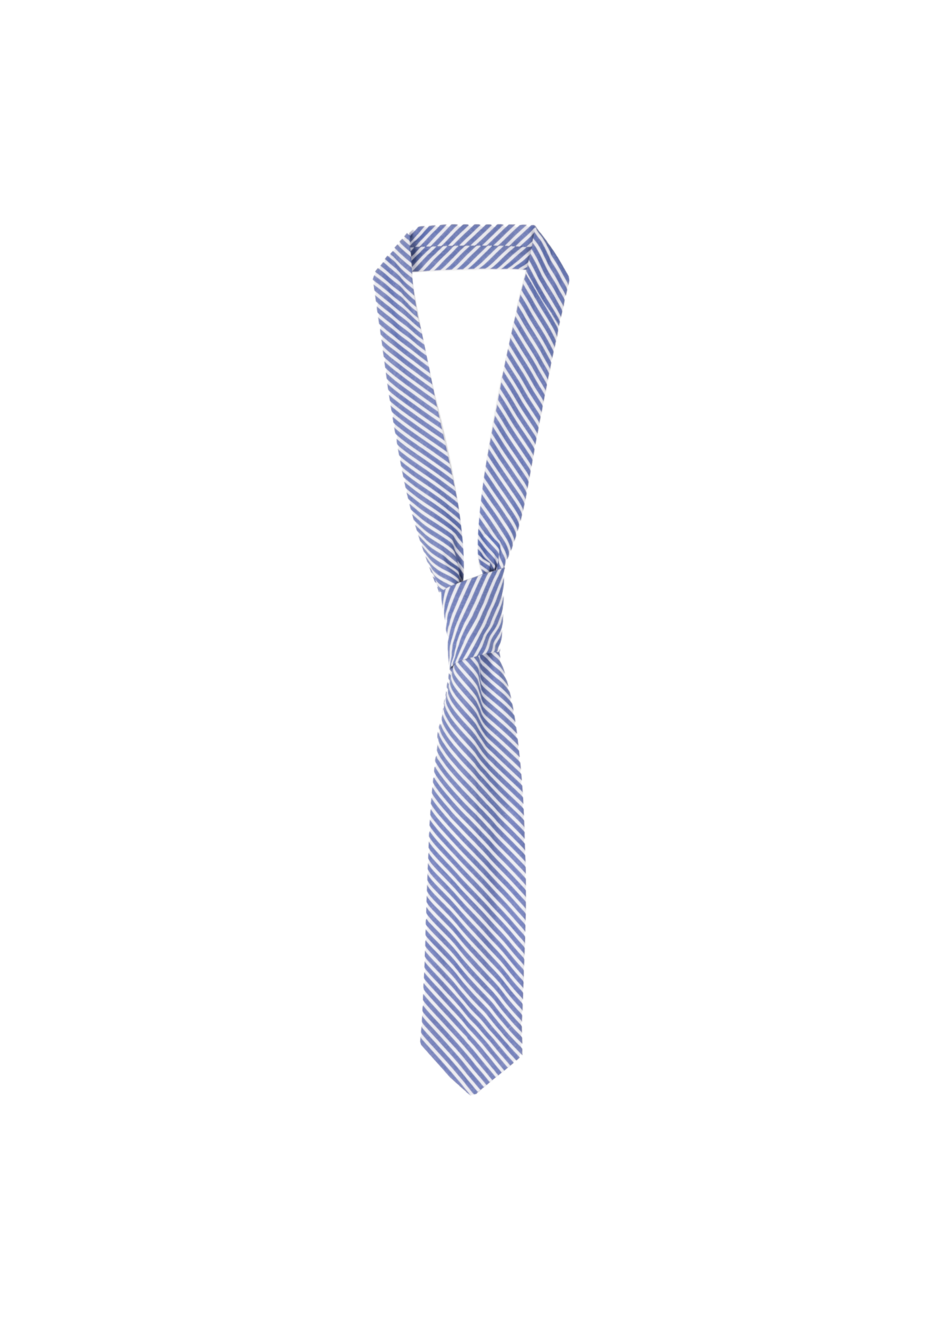 Aanbieding van Double striped tie voor 29,95€ bij Vanilia